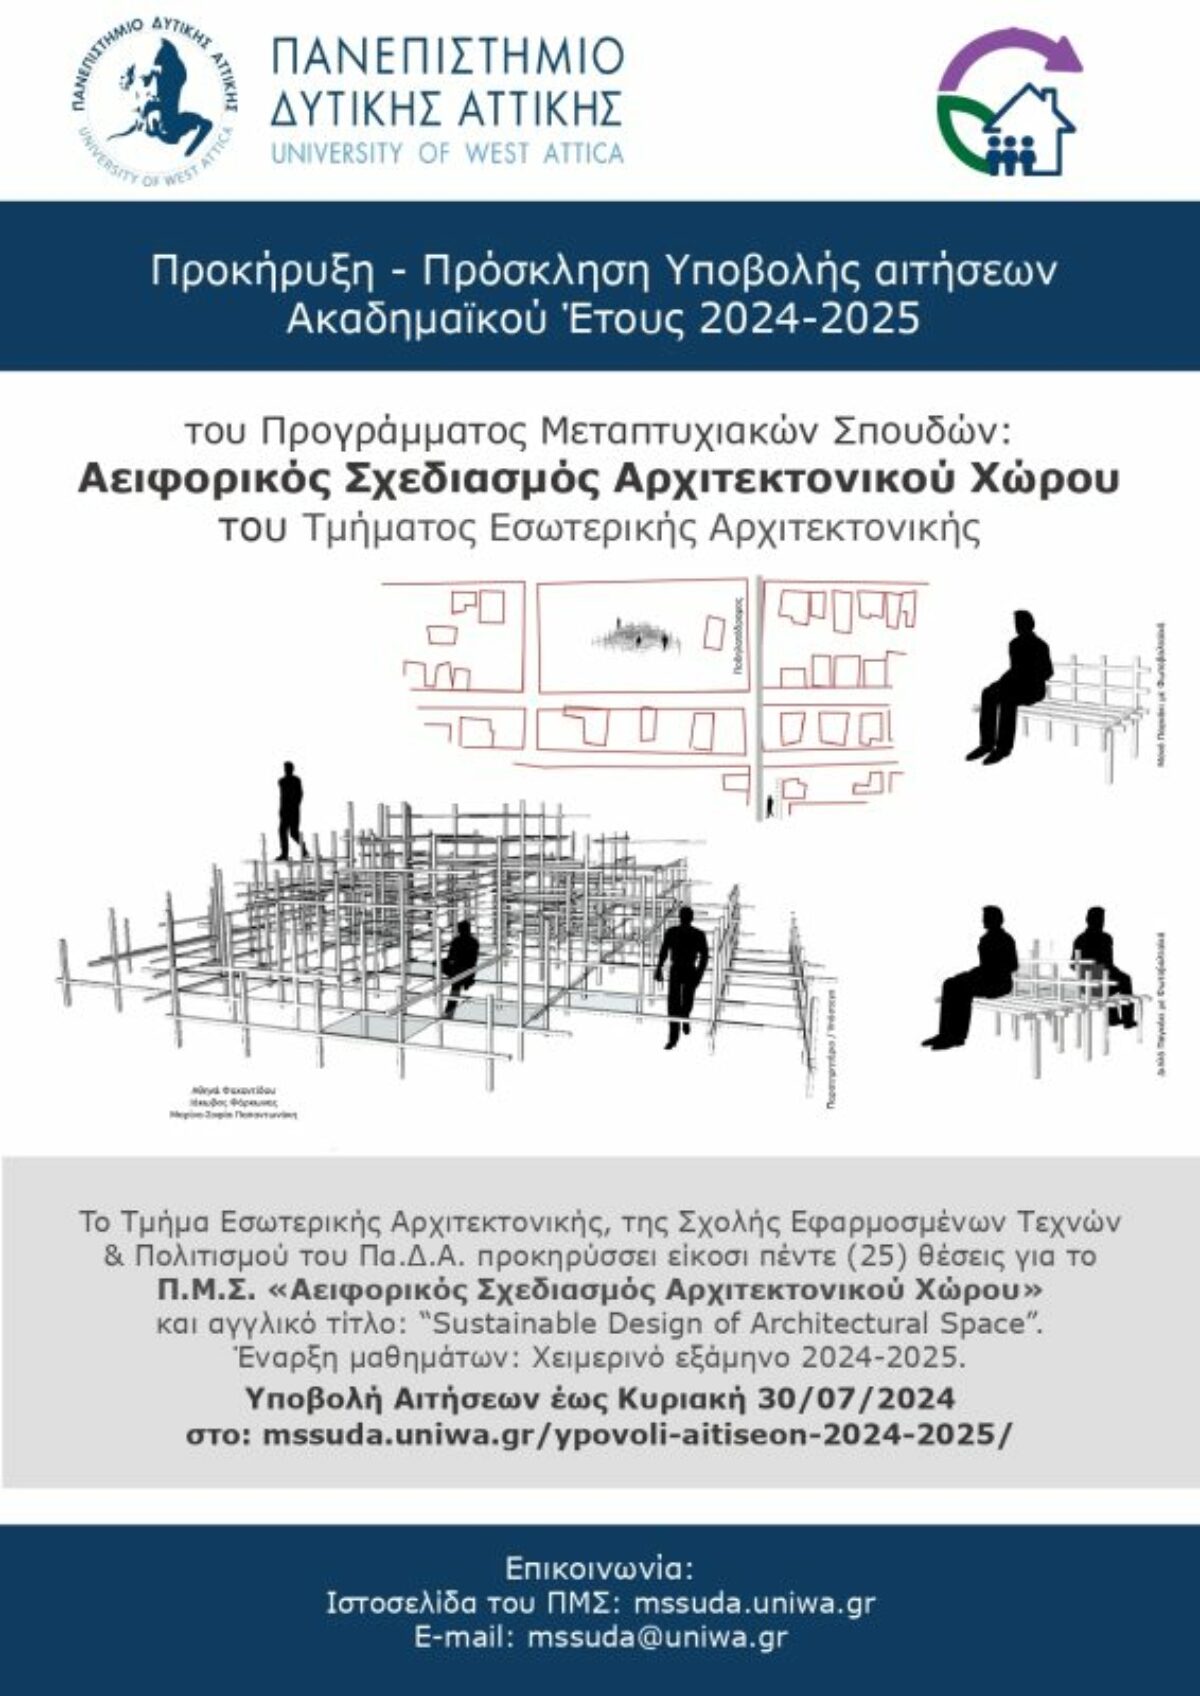 Πρόγραμμα Μεταπτυχιακών Σπουδών «Αειφορικός Σχεδιασμός Αρχιτεκτονικού Χώρου» (τίτλος στα αγγλικά: “Sustainable Design of Architectural Space”» από το Τμήμα Εσωτερικής Αρχιτεκτονικής του Πανεπιστημίου Δυτικής Αττικής (2024 – 2025)